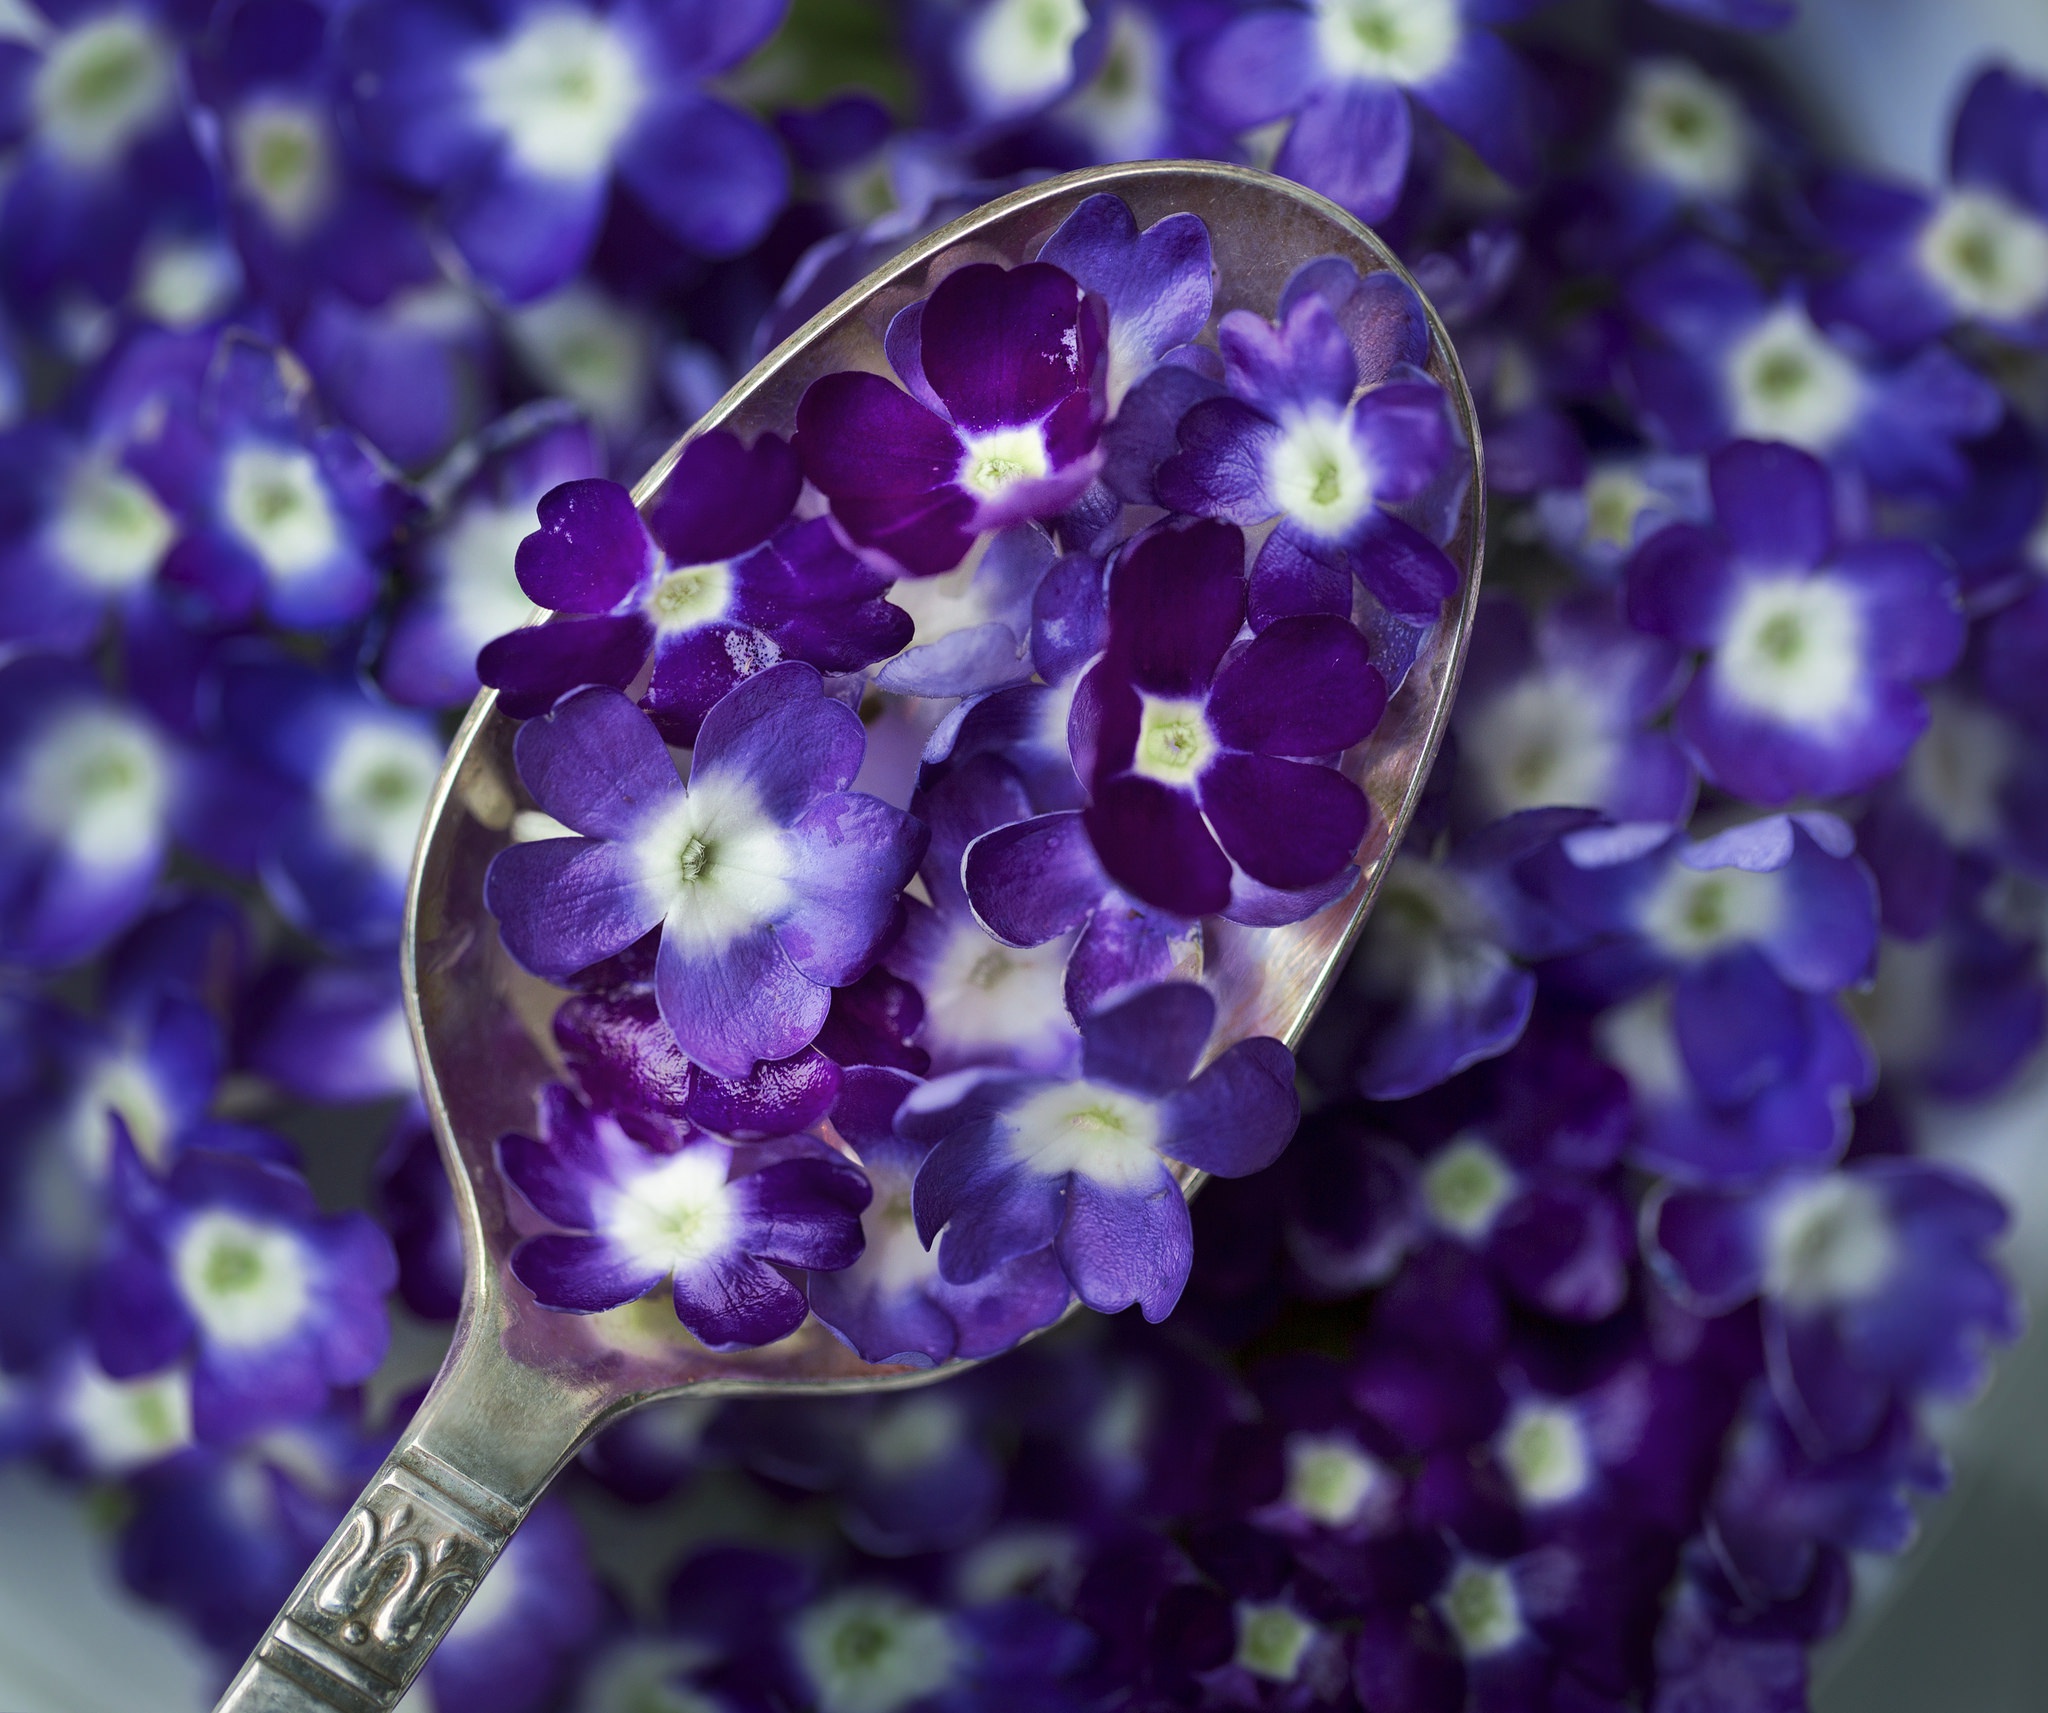 Free download wallpaper Flower, Spoon, Purple Flower, Man Made on your PC desktop